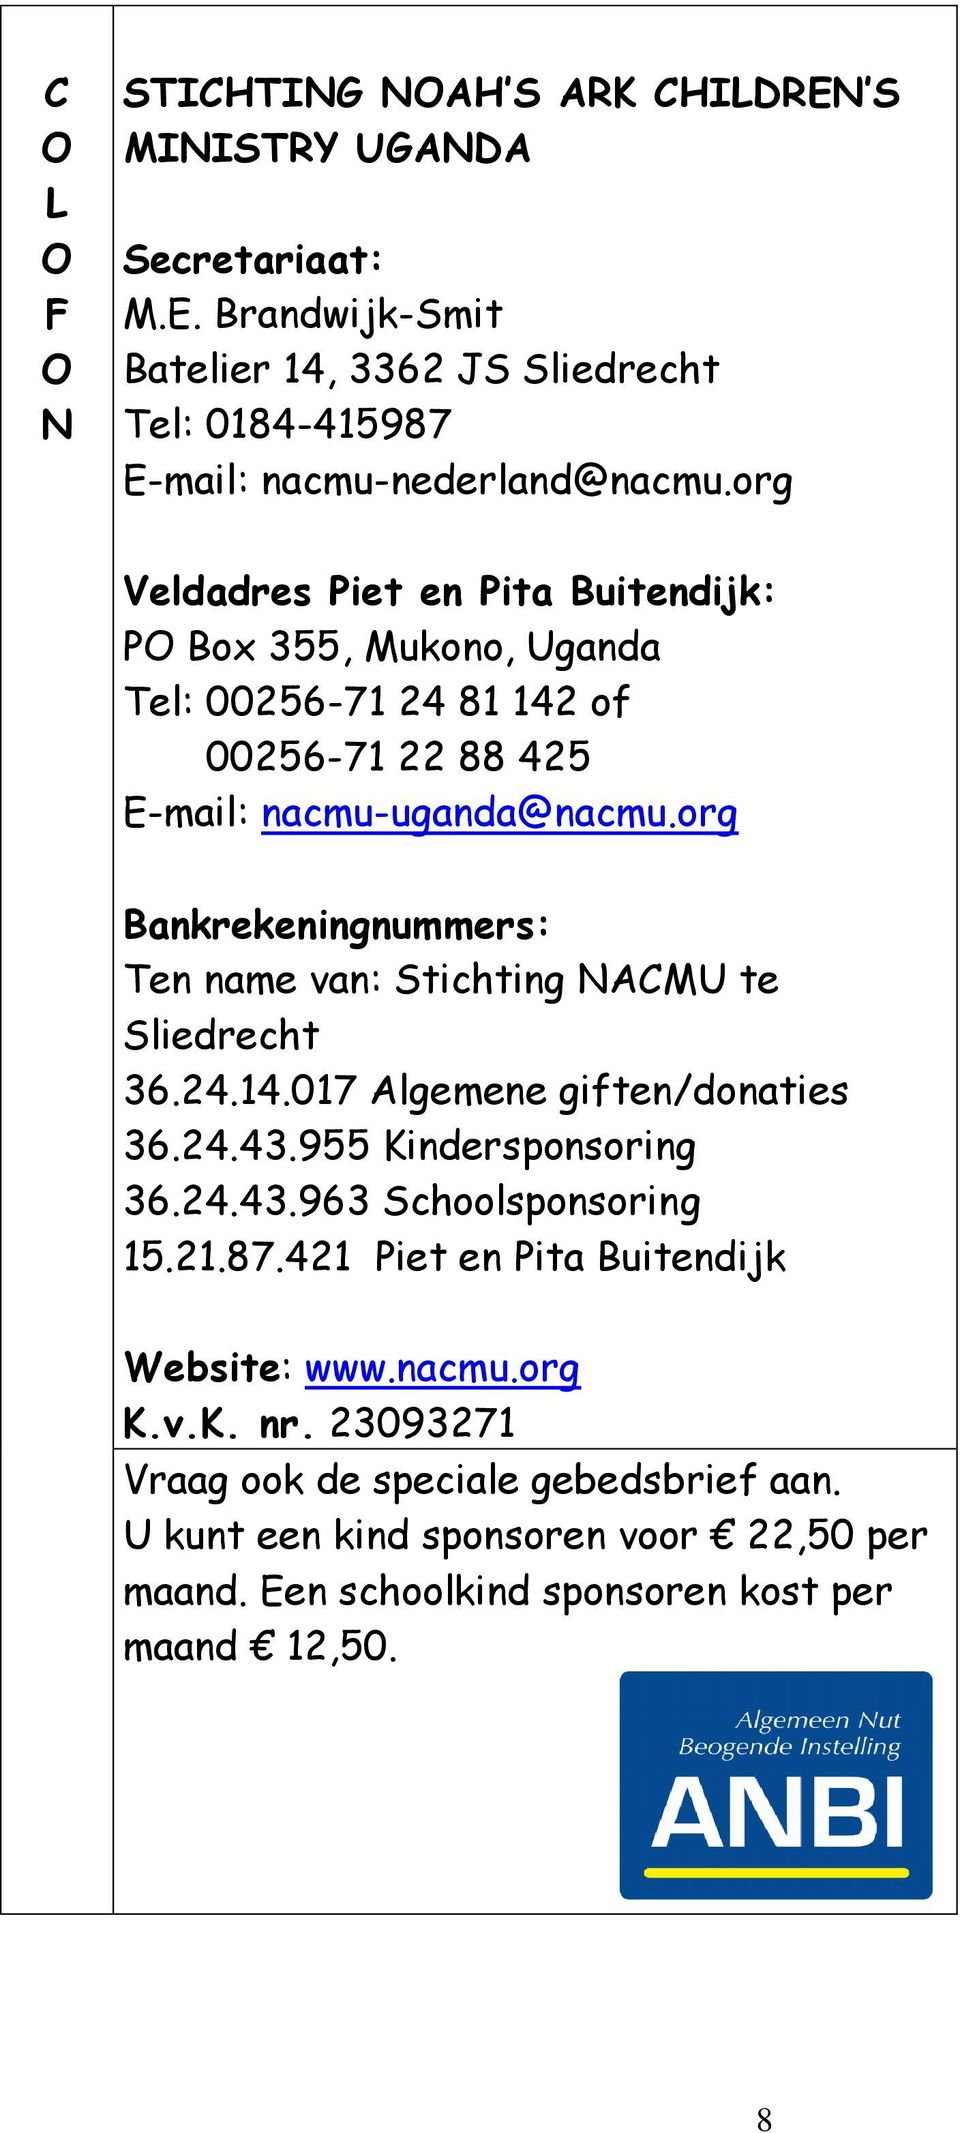 org Bankrekeningnummers: Ten name van: Stichting NACMU te Sliedrecht 36.24.14.017 Algemene giften/donaties 36.24.43.955 Kindersponsoring 36.24.43.963 Schoolsponsoring 15.21.